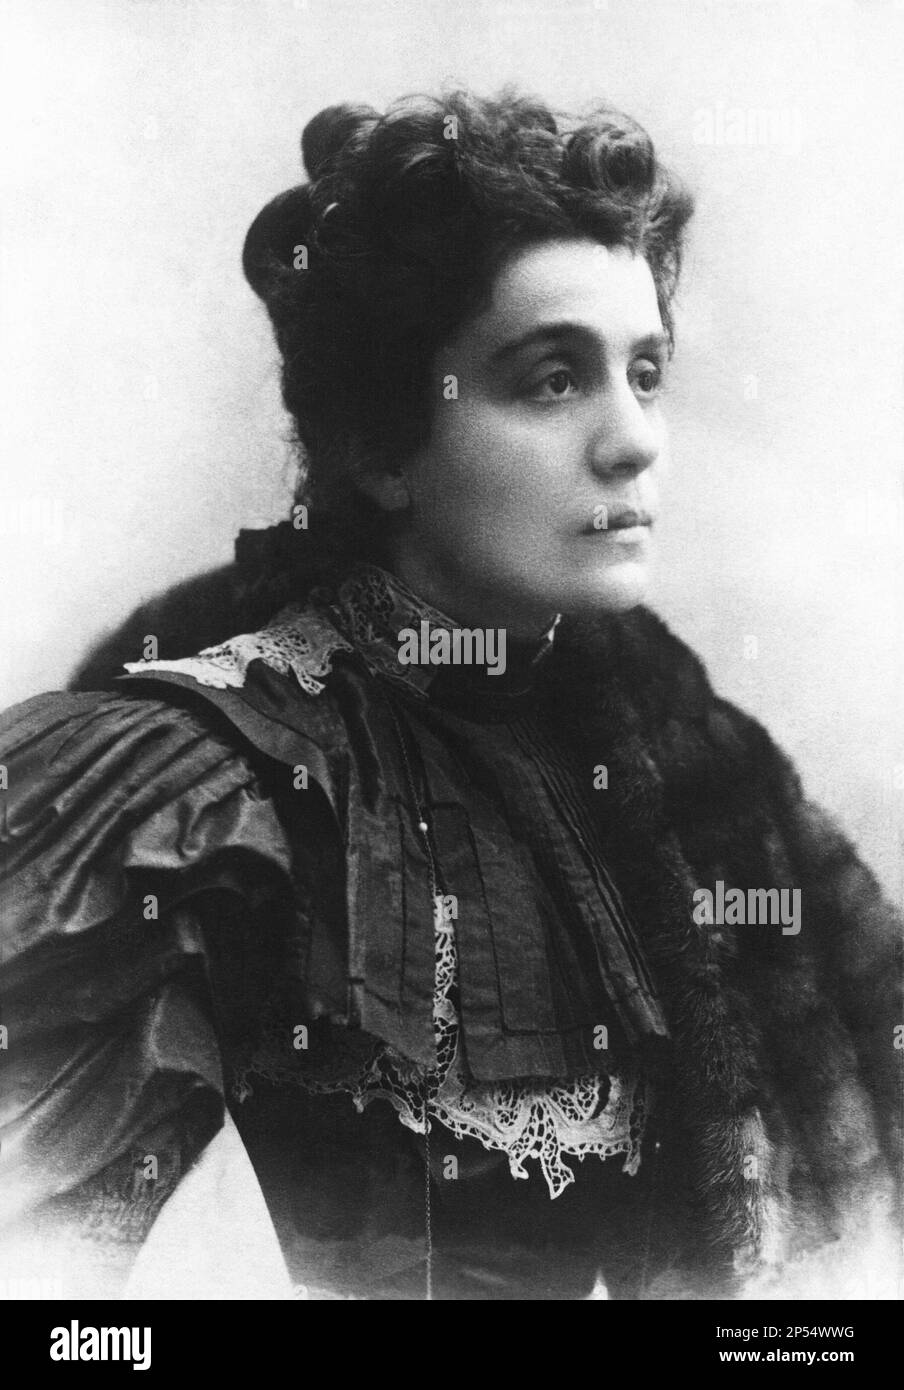 La celebre ELEONORA DUSE ( 1858 - 1924 ), la più famosa attrice drammatica italiana del mondo , Celebrato amante del poeta italiano GABRIELE D'ANNUNZIO - TEATRO - TEATRO - attrice - pelliccia - ritratto - ritratto - pizzo - chignon - DIVA - DIVINA - attrice teatrale - D' annunzio - DAnnunzio --- Archivio GBB Foto Stock